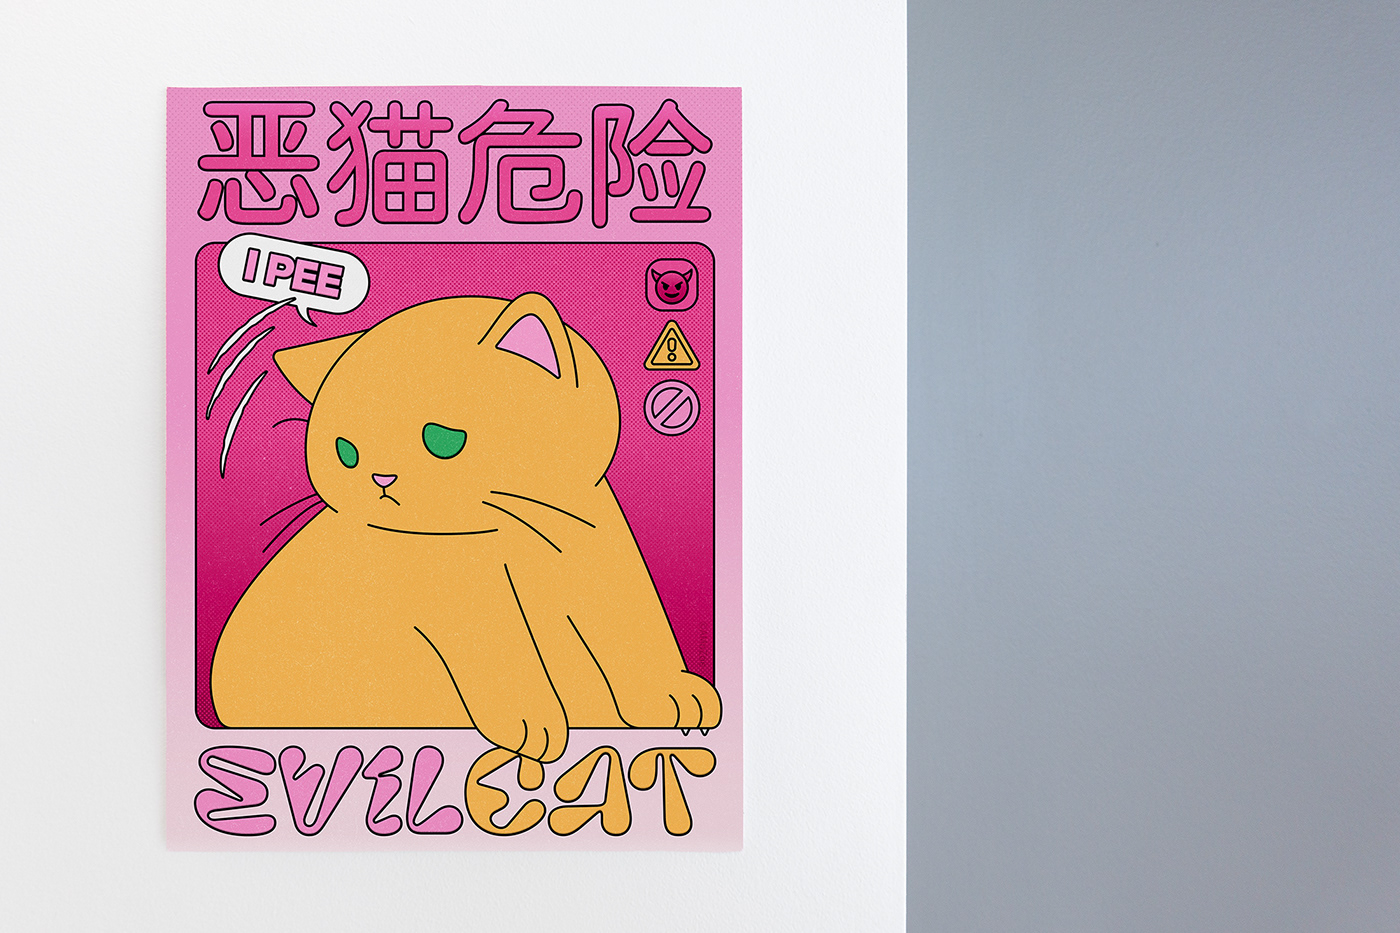 Bad Cat Cat design graphic graphic design  poster